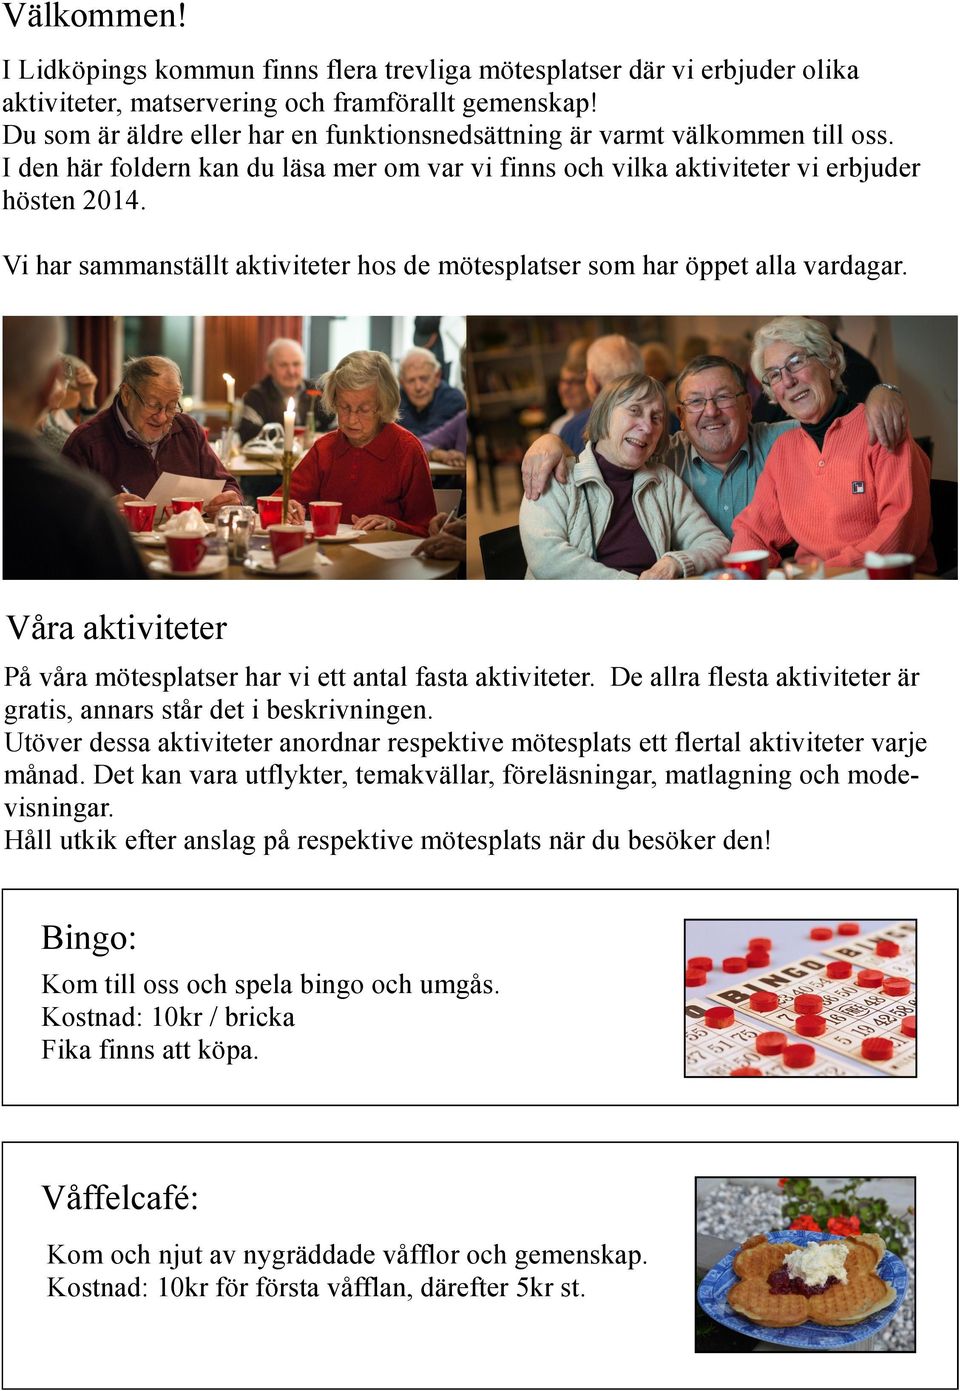 SeniorPorten - Sveriges bästa mötesplats för pensionärer - Om Seniorporten